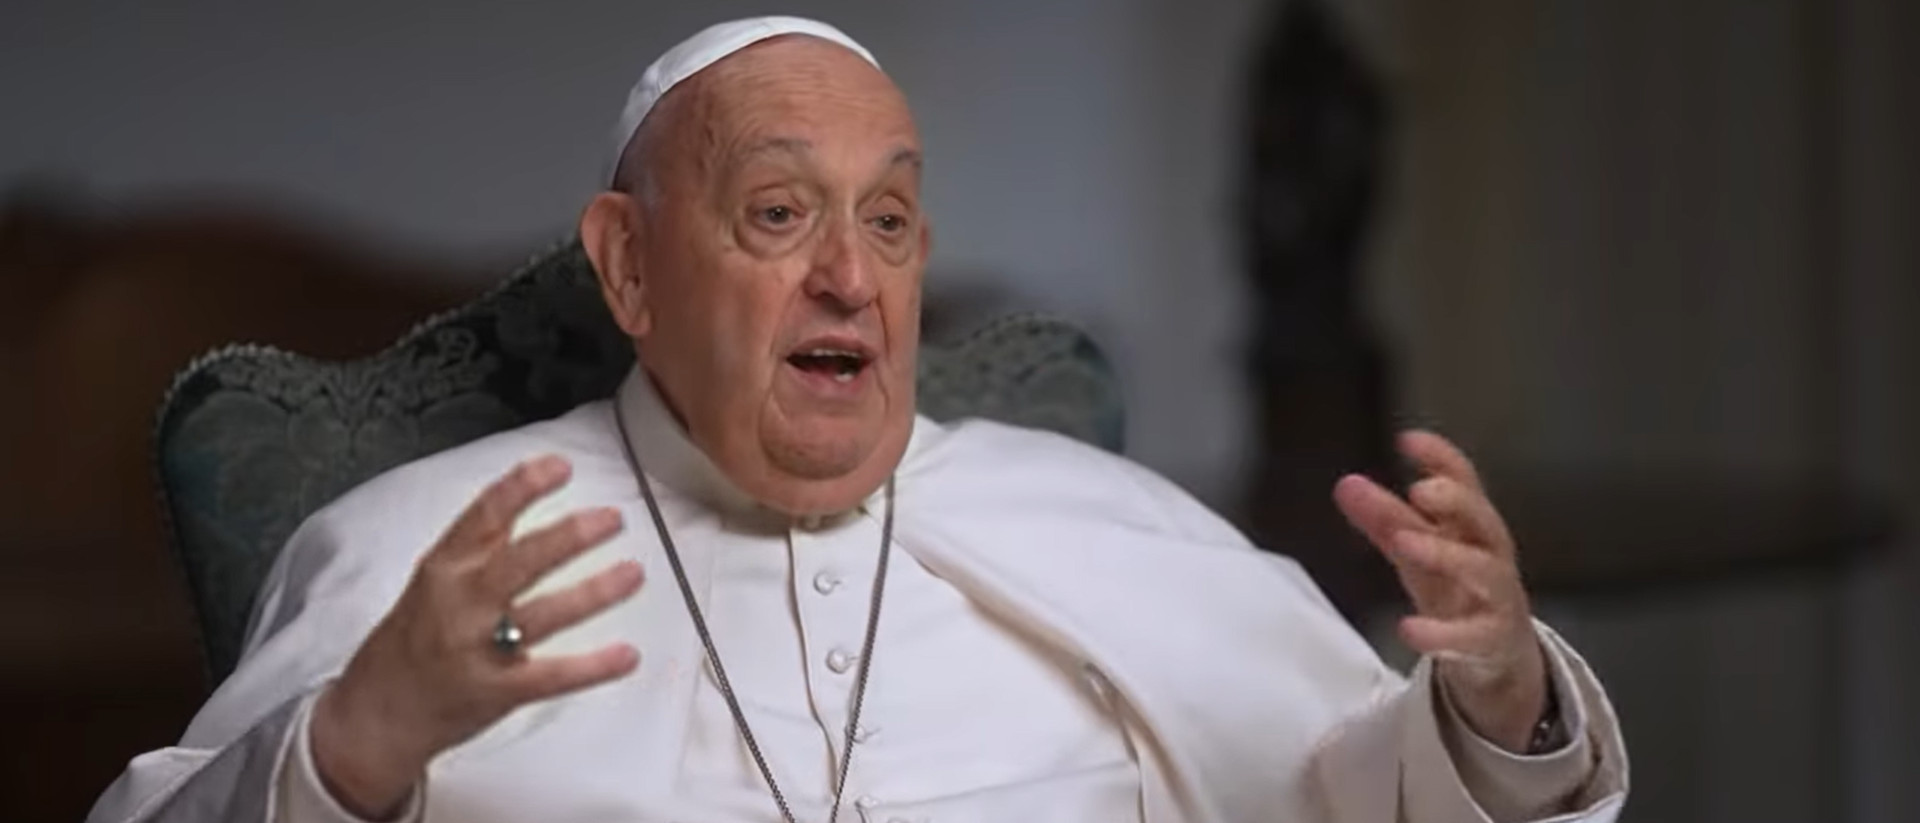 Papst Franziskus im Gespräch mit Norah O’Donnell über das Frauendiakonat